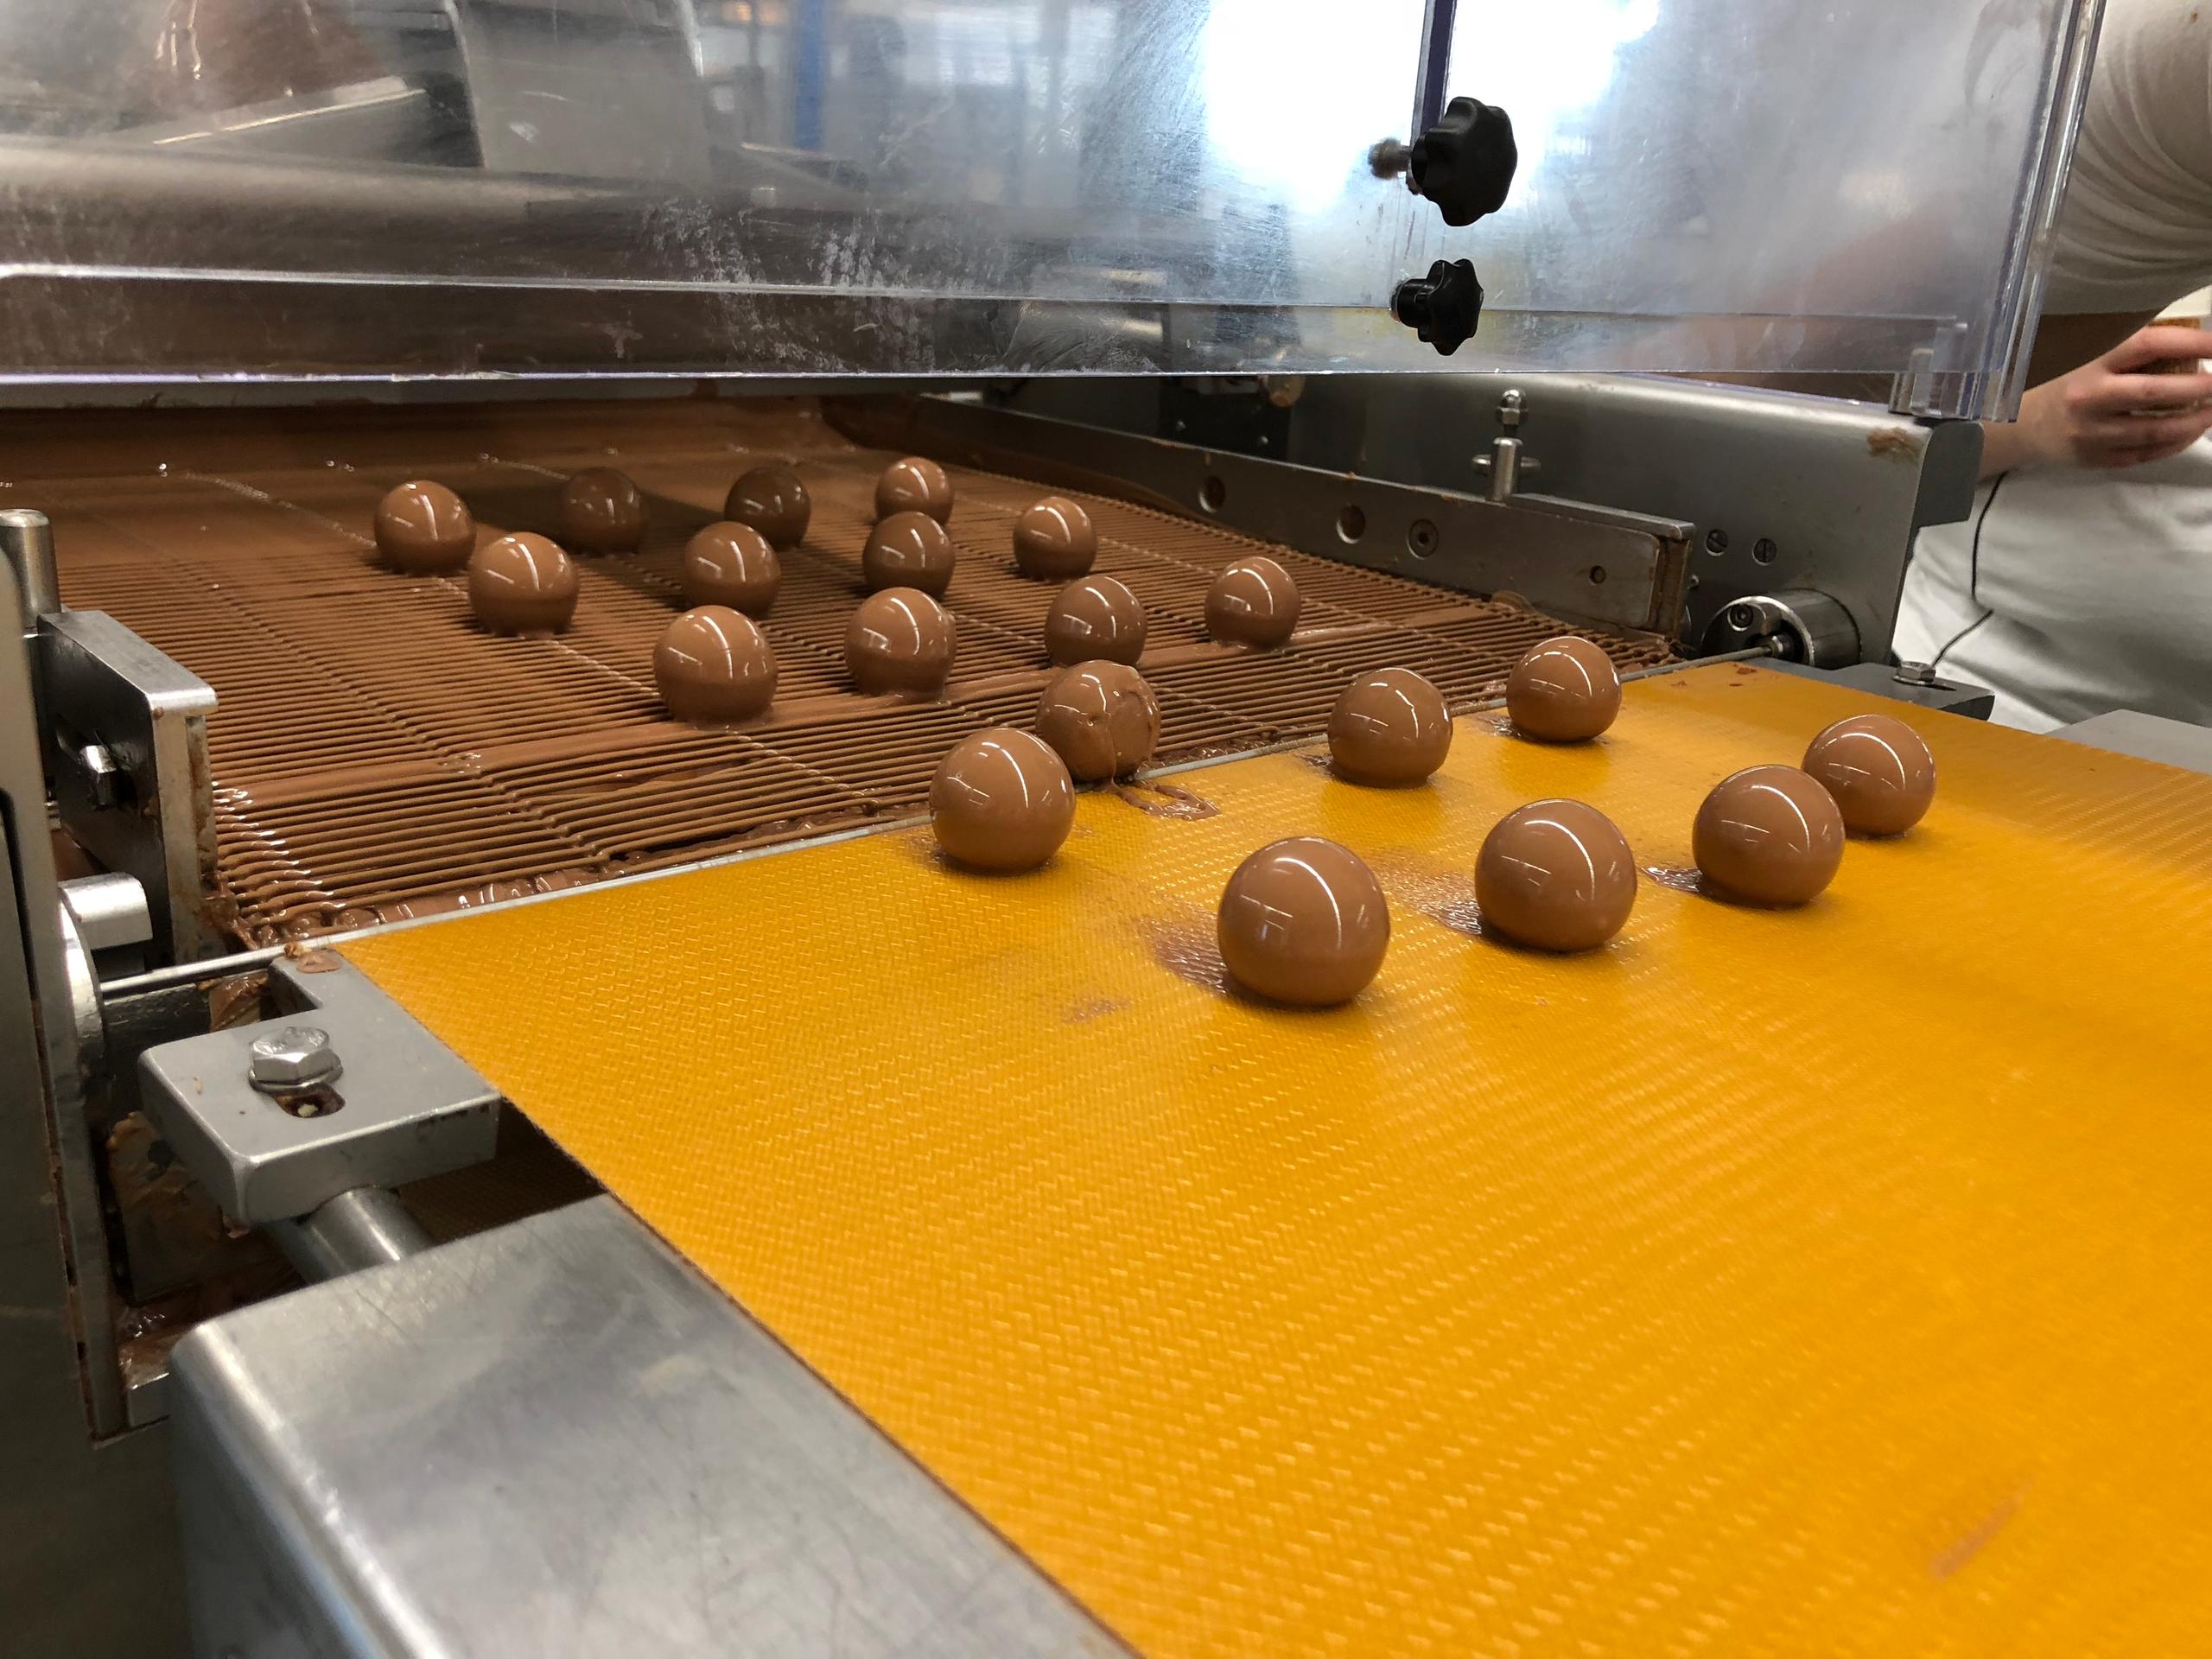 Bolas de chocolate saliendo de una máquina